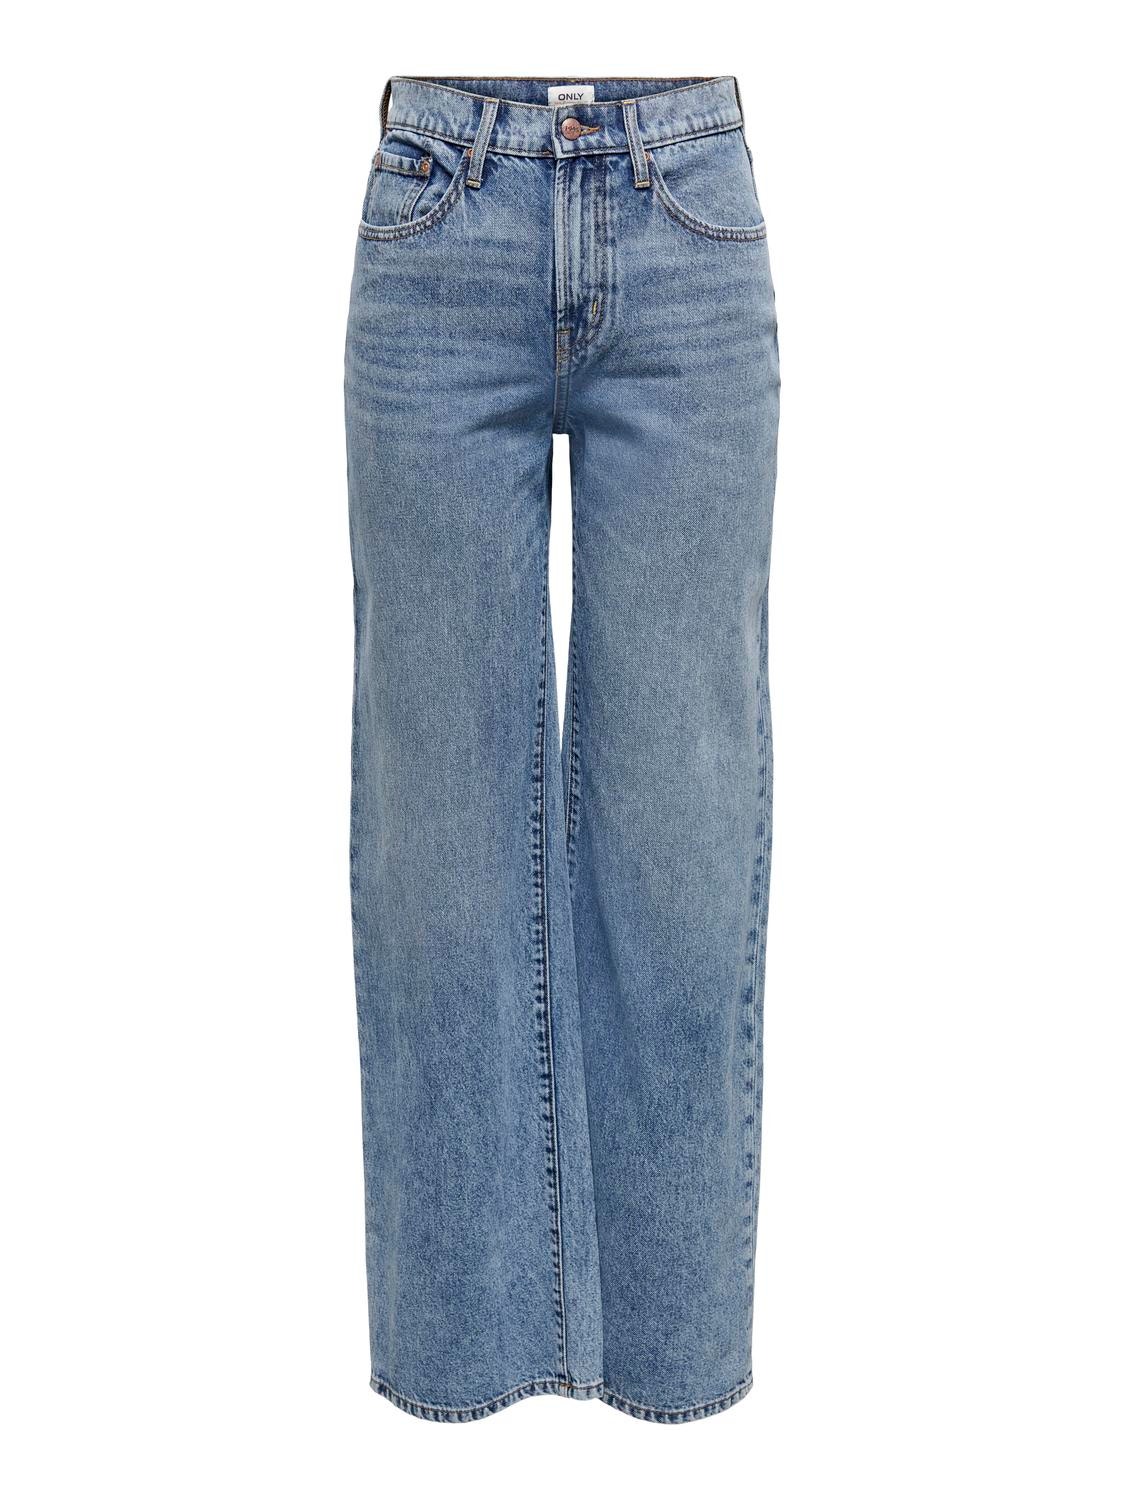 ONLY Wide Leg Fit High waist Jeans -Light Blue Denim - 15222070